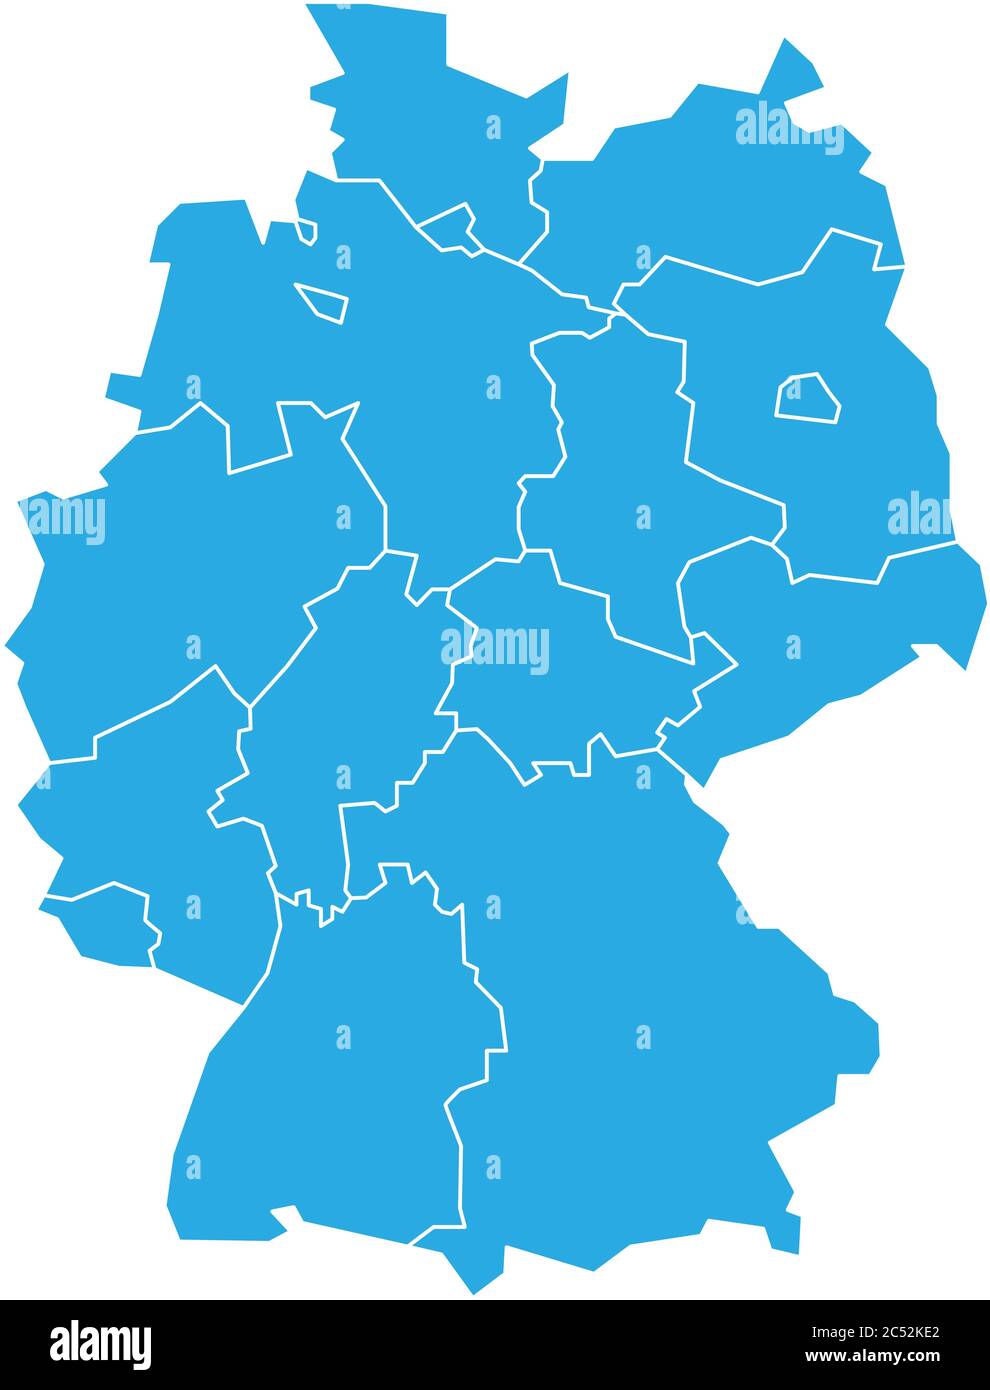 Mapa De Alemania Devindo A 13 Estados Federales Y 3 Ciudades Estados Berlín Bremen Y Hamburgo 5372